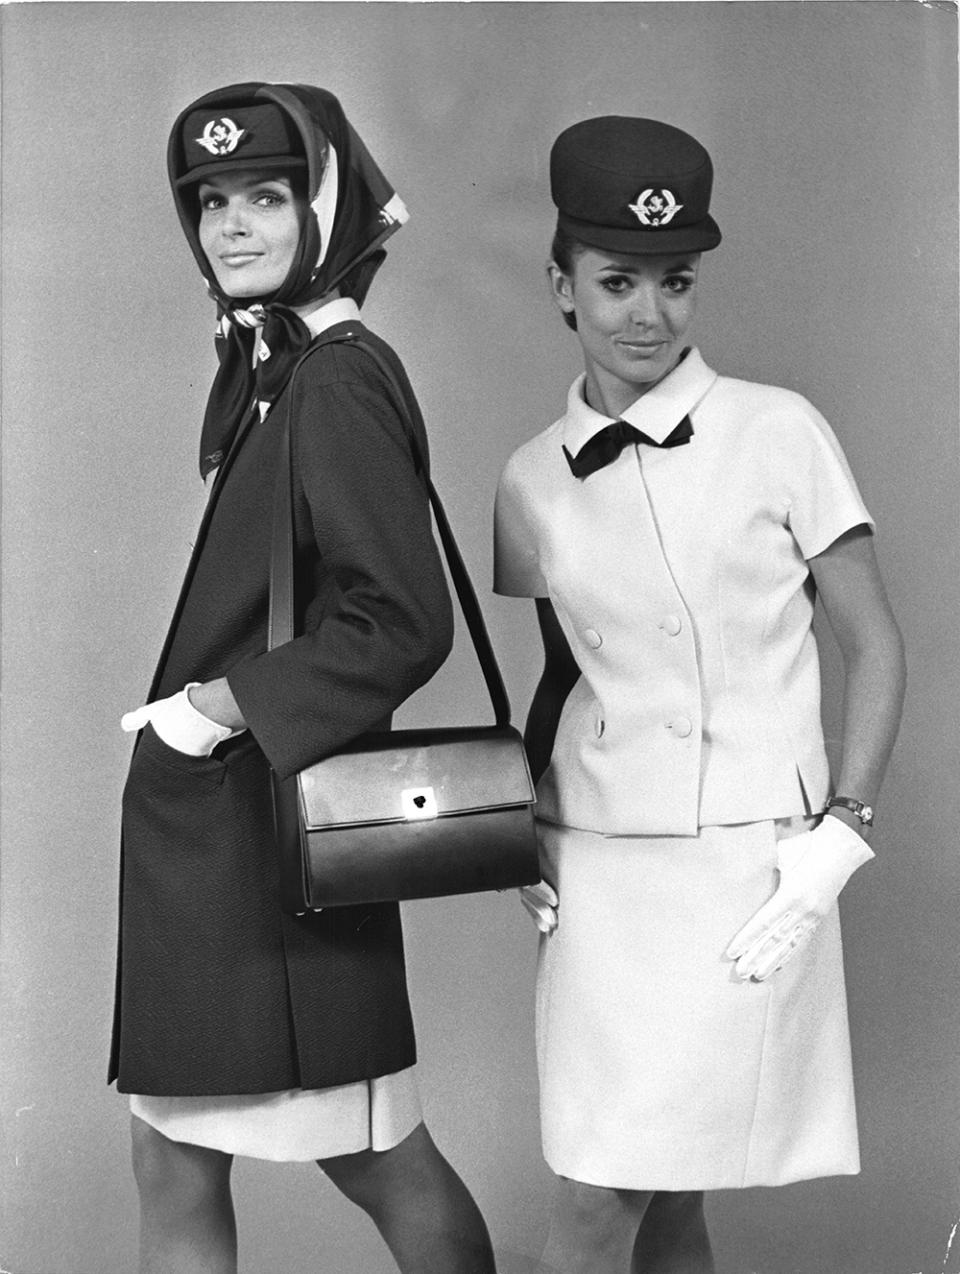 Air France, Balenciaga, uniforms, fashion